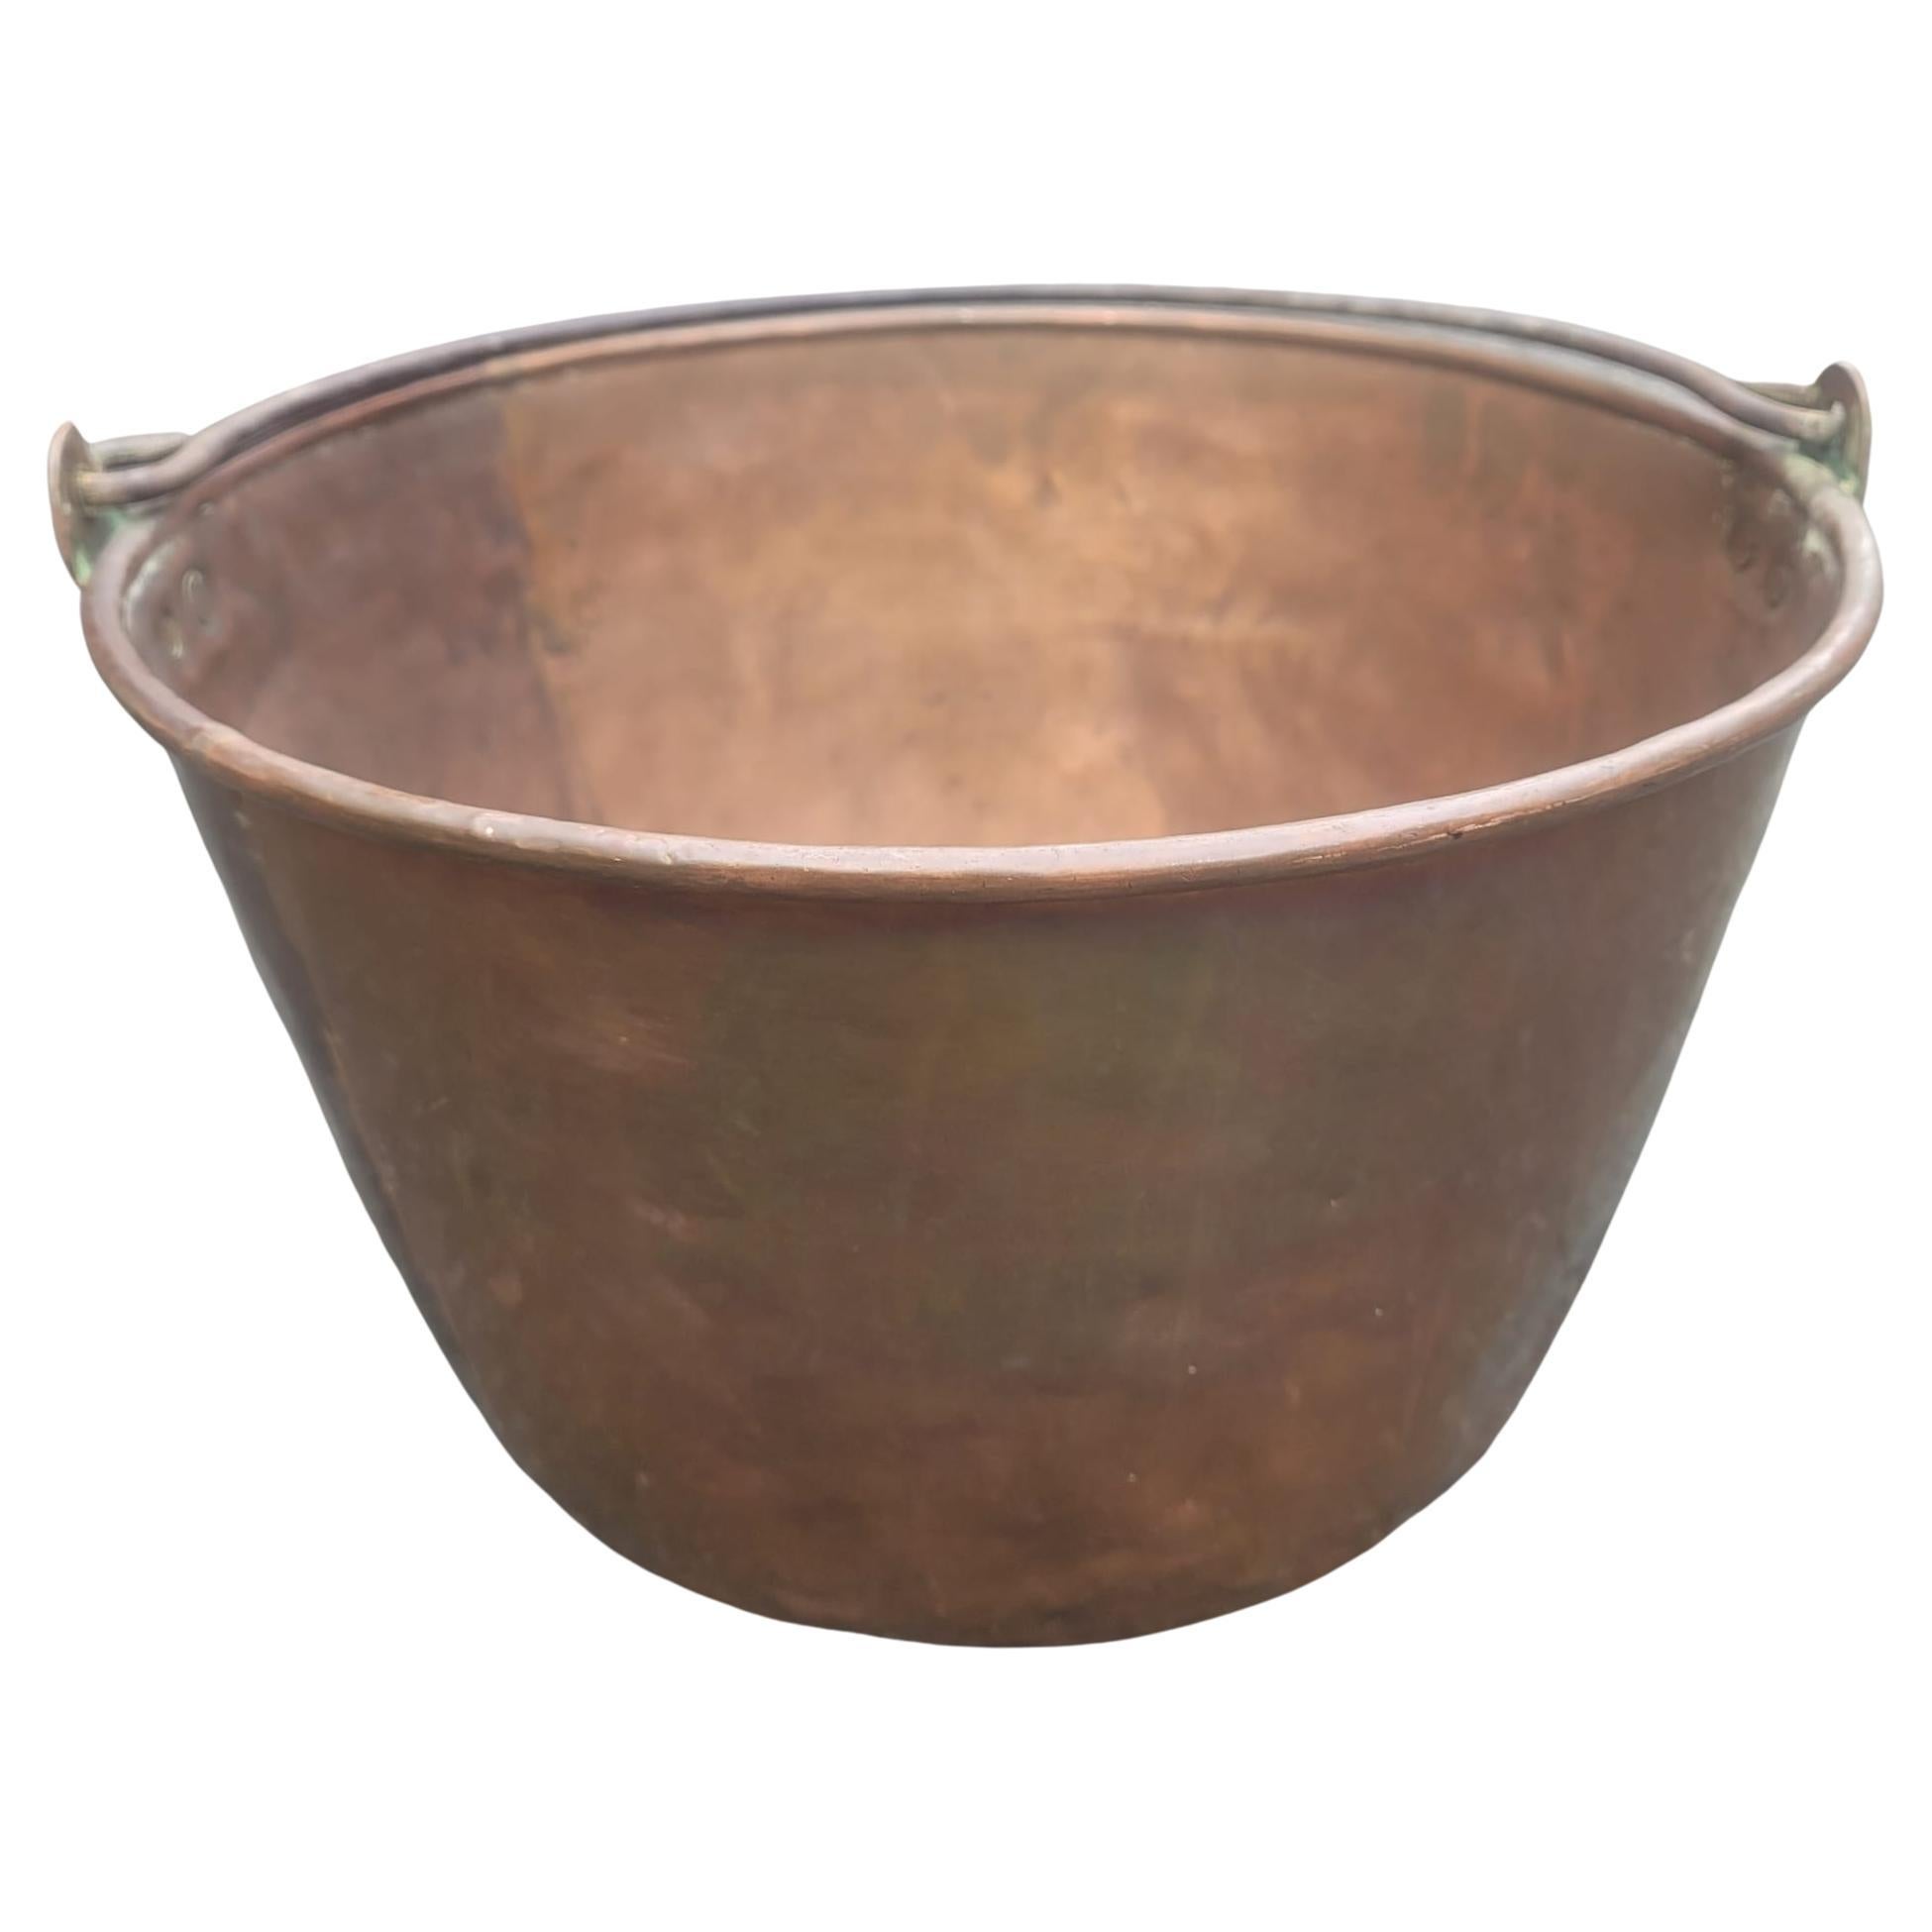 1920s Copper Caldron pot, planter. Measures 15